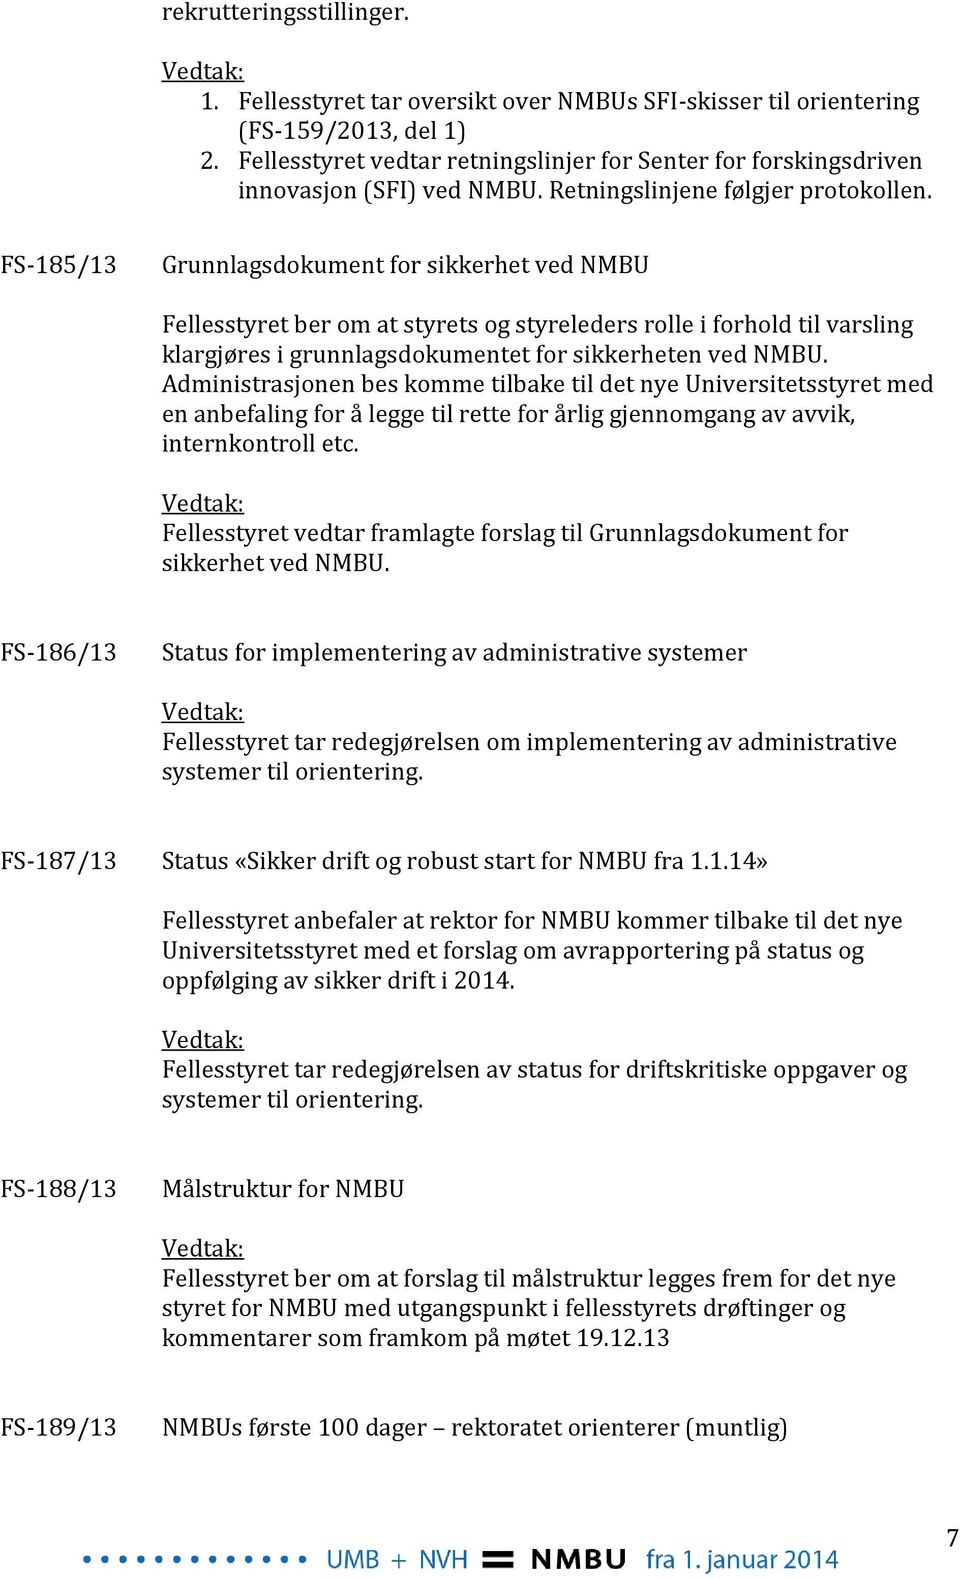 FS-185/13 Grunnlagsdokument for sikkerhet ved NMBU Fellesstyret ber om at styrets og styreleders rolle i forhold til varsling klargjøres i grunnlagsdokumentet for sikkerheten ved NMBU.